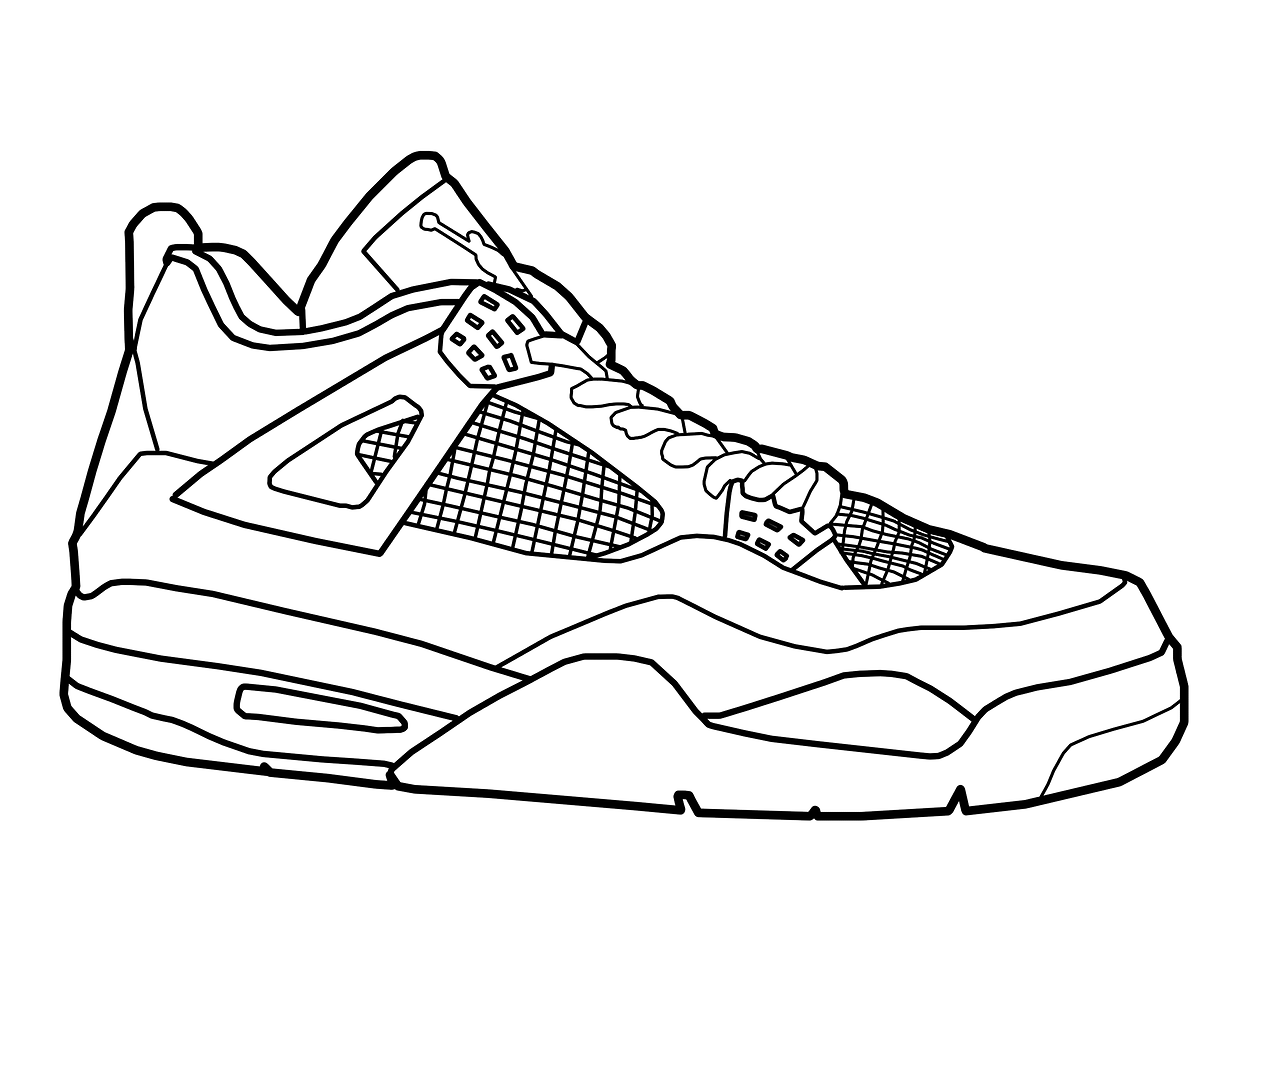  Drawing Jordans Shoes Coloring Pages - Jordan Retro 5